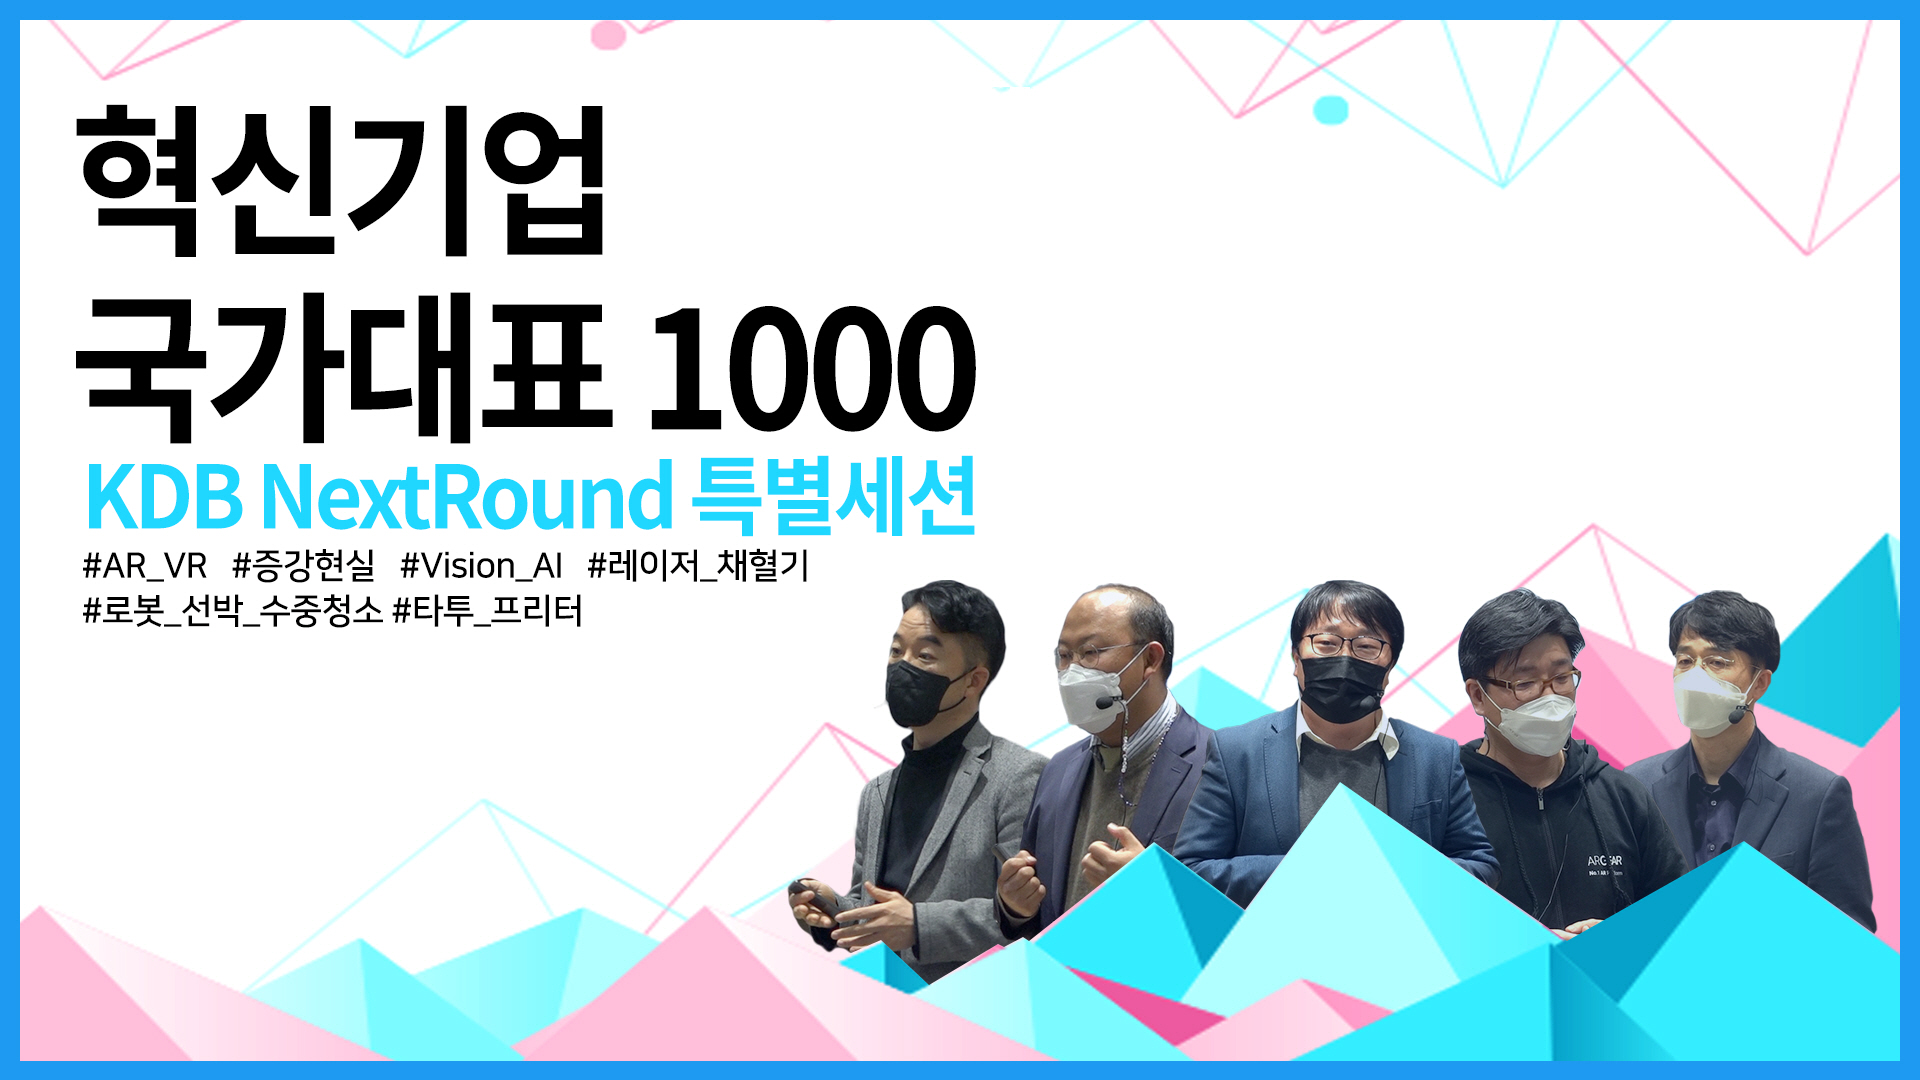 「혁신기업 국가대표 1000」선정 기업을 위한 KDB NextRound 특별세션